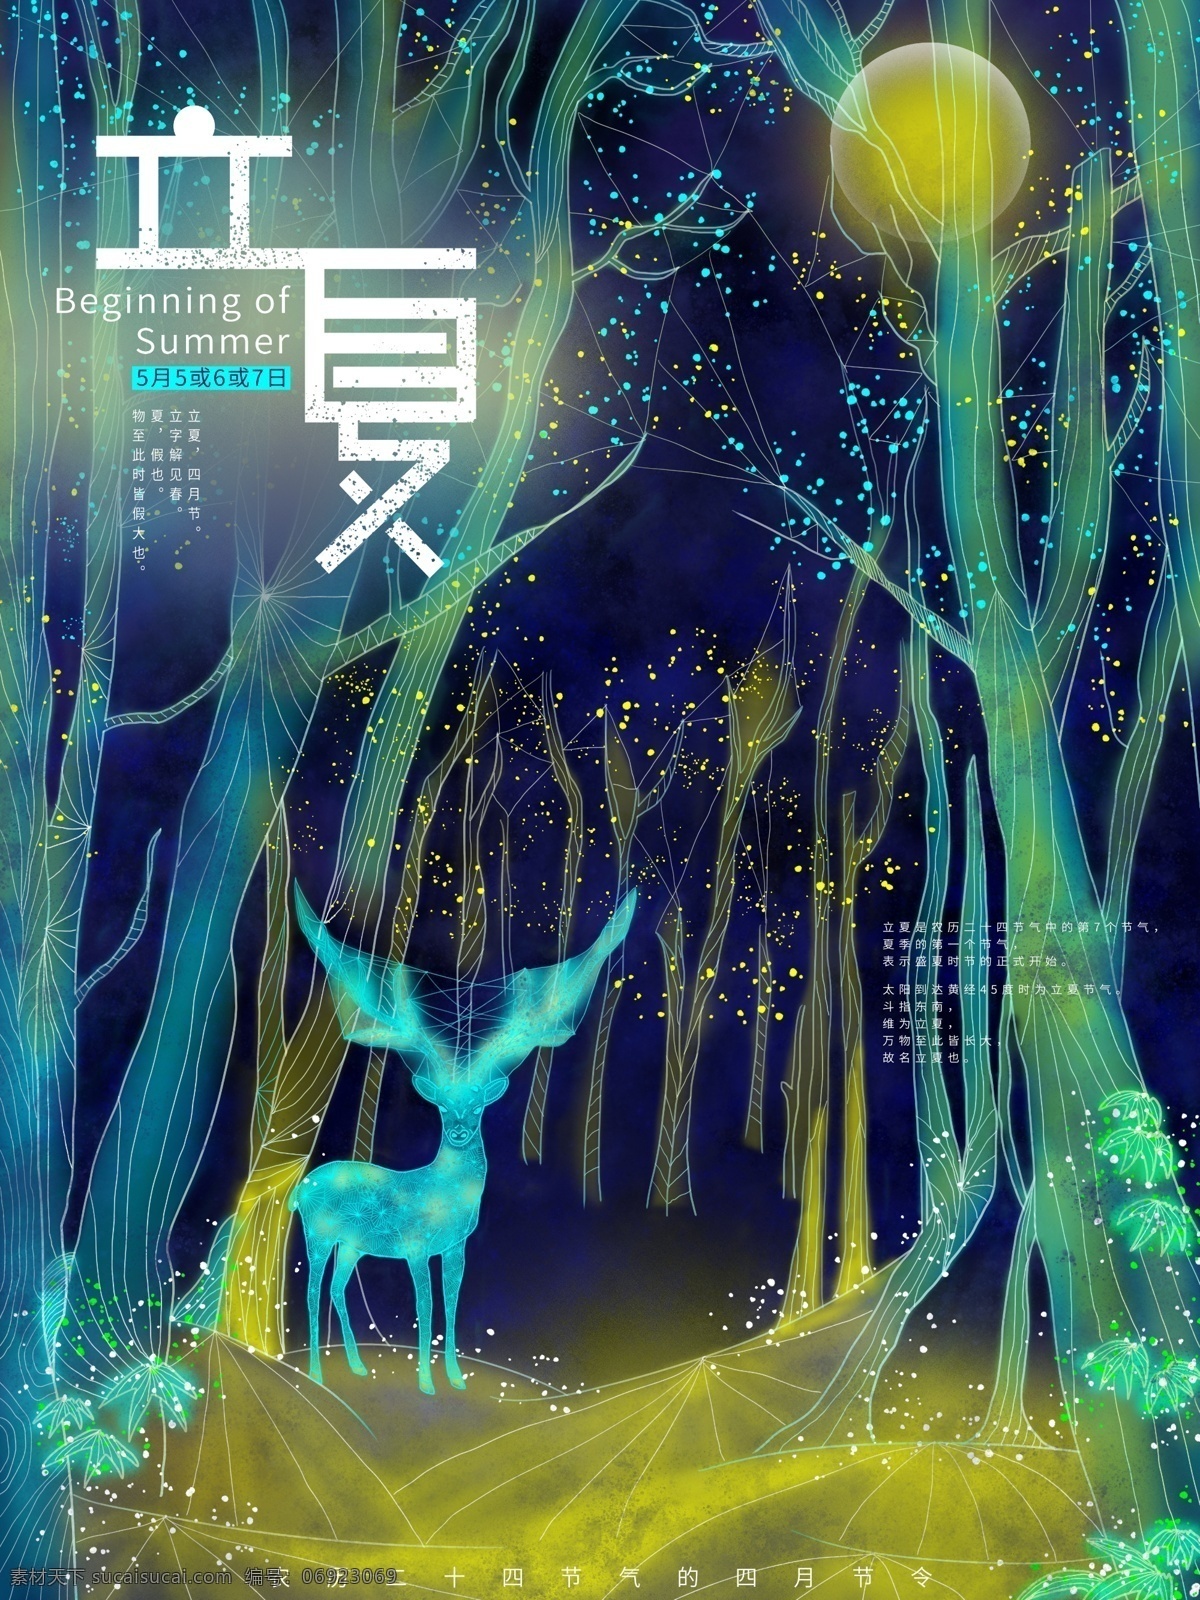 立夏 节气 原创 透 感 线条 色彩 林中 小鹿 插画 海报 节日 传统 透感 夜色 夏日 psd格式